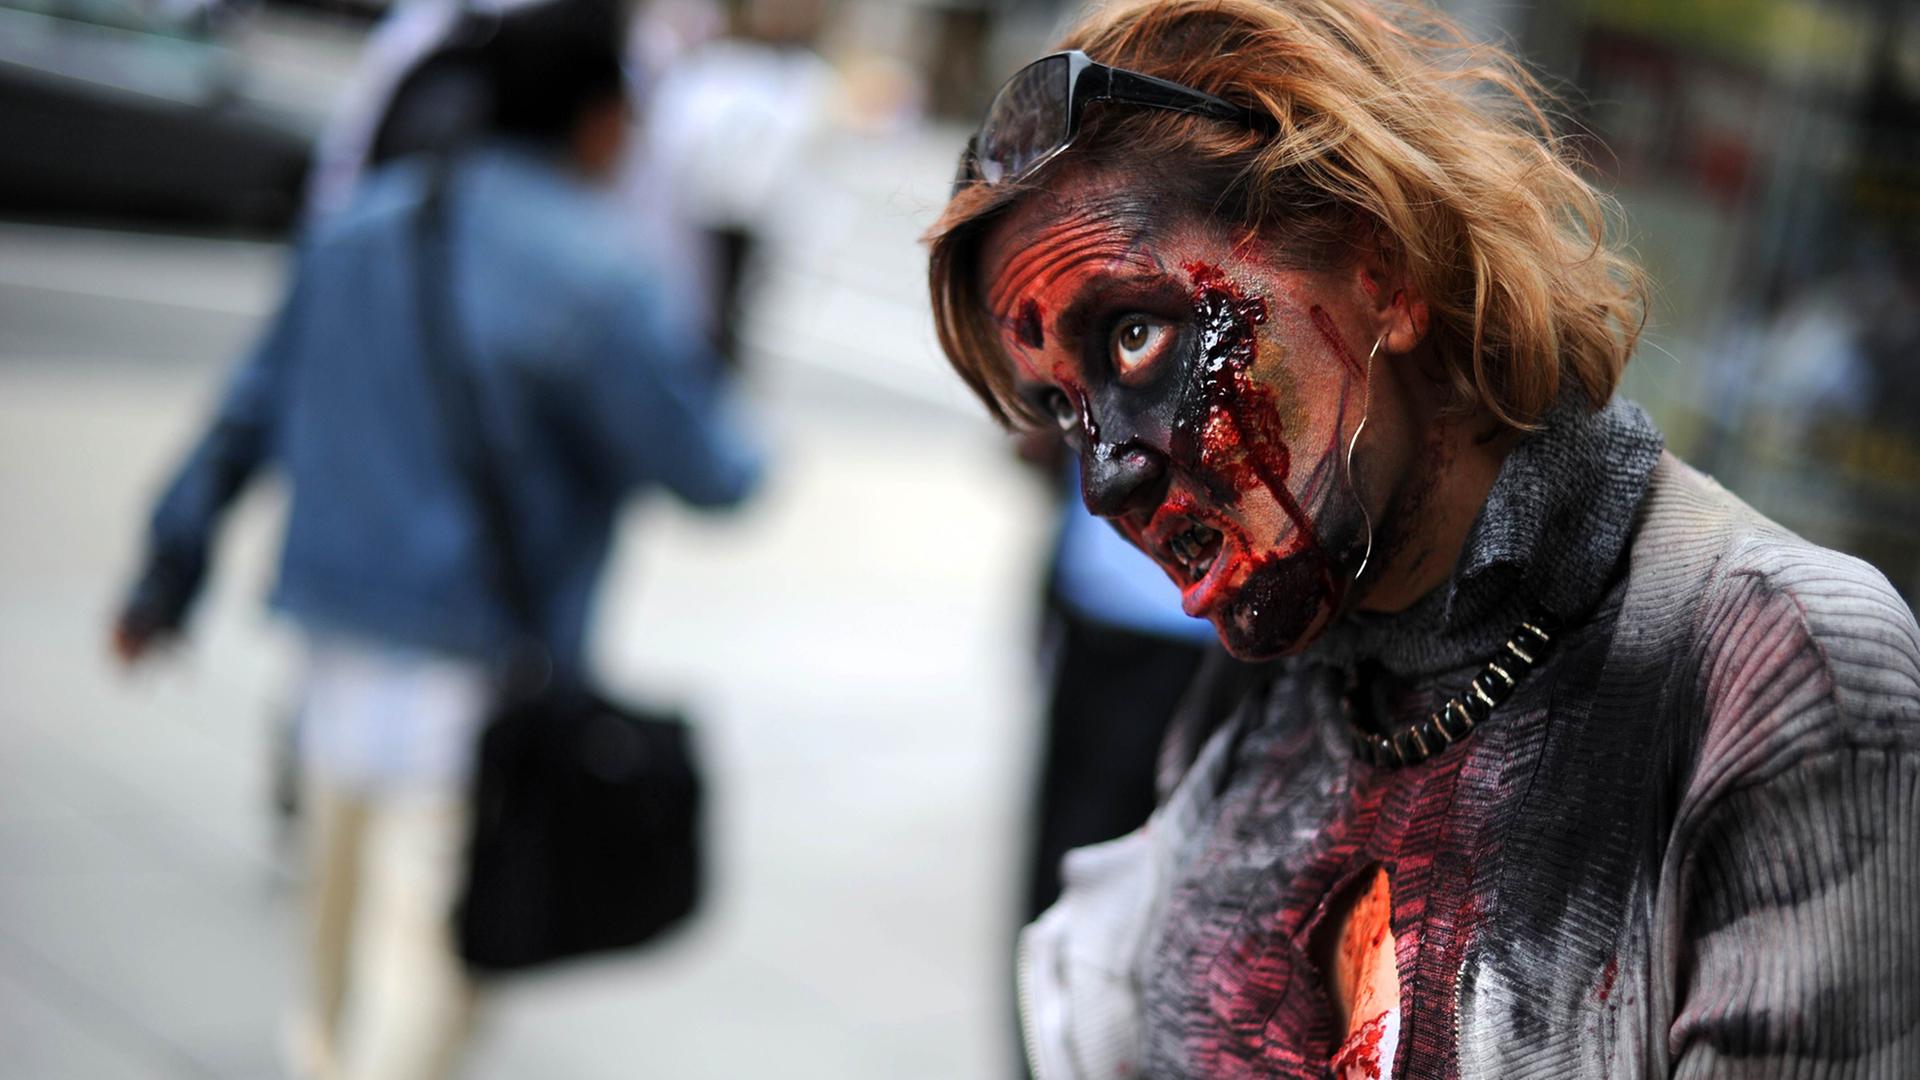 Eine Schauspielerin ist als Zombie verkleidet im Rahmen einer Promoaktion für "The Walking Dead".